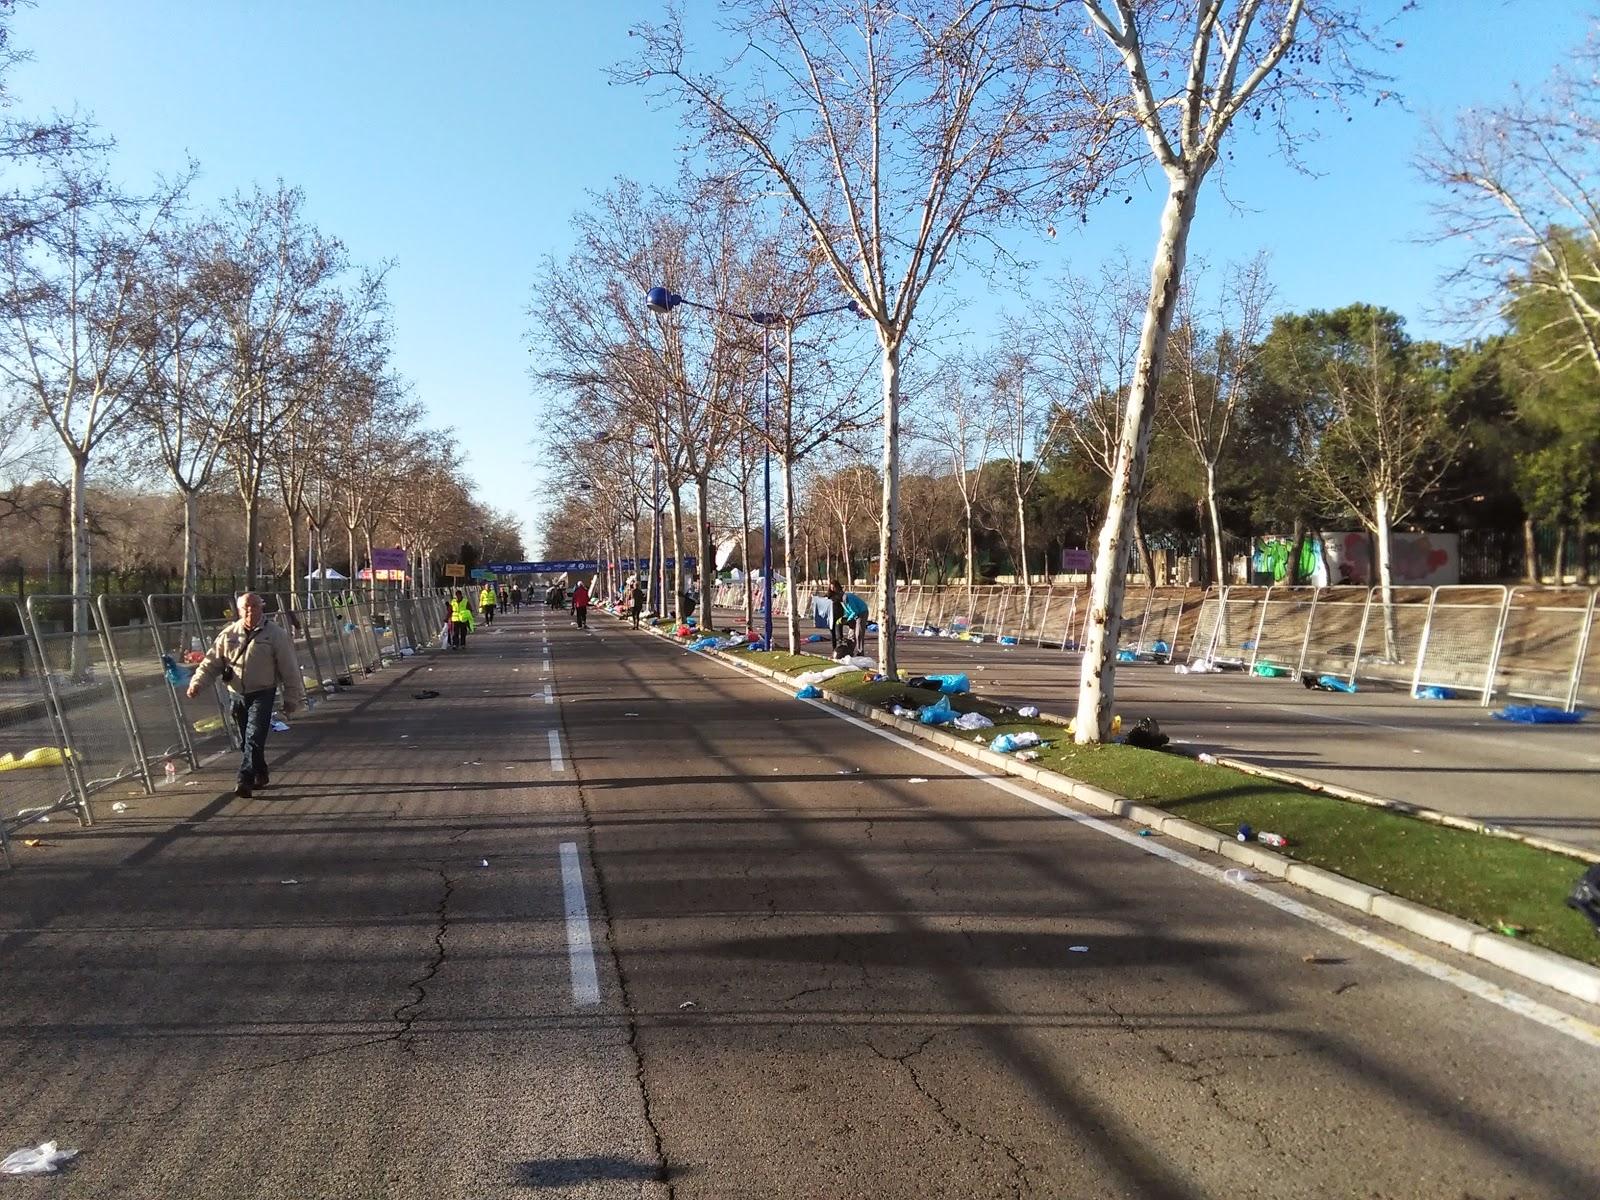 Voluntario (otra vez) en el Maratón de Sevilla